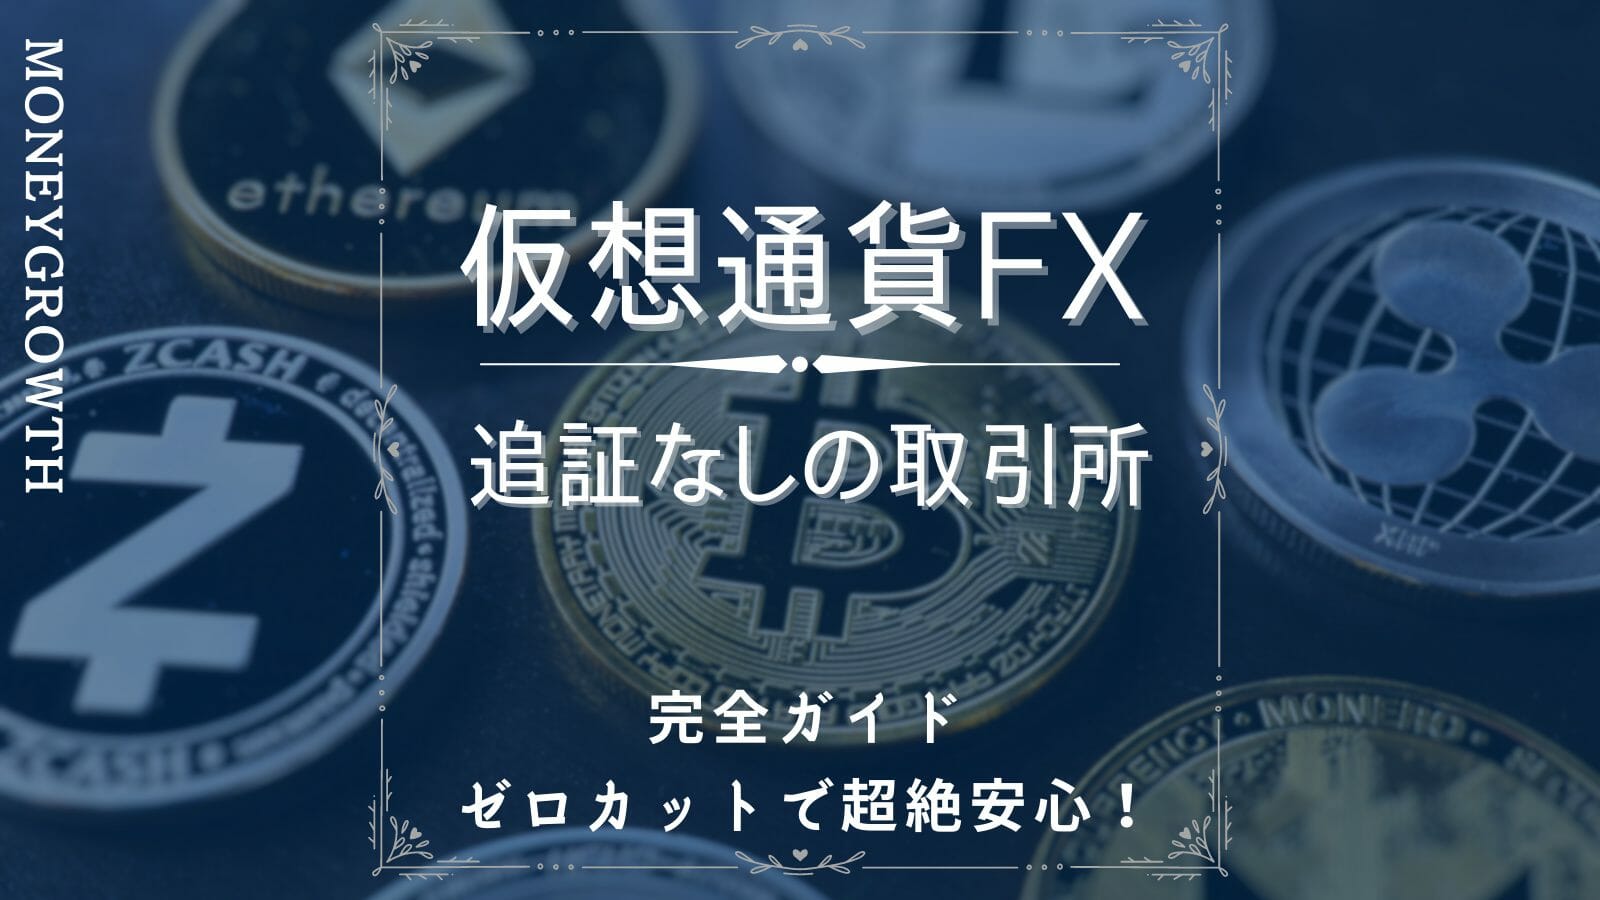 仮想通貨FX(ビットコインFX)の追証なしの取引所を完全ガイド